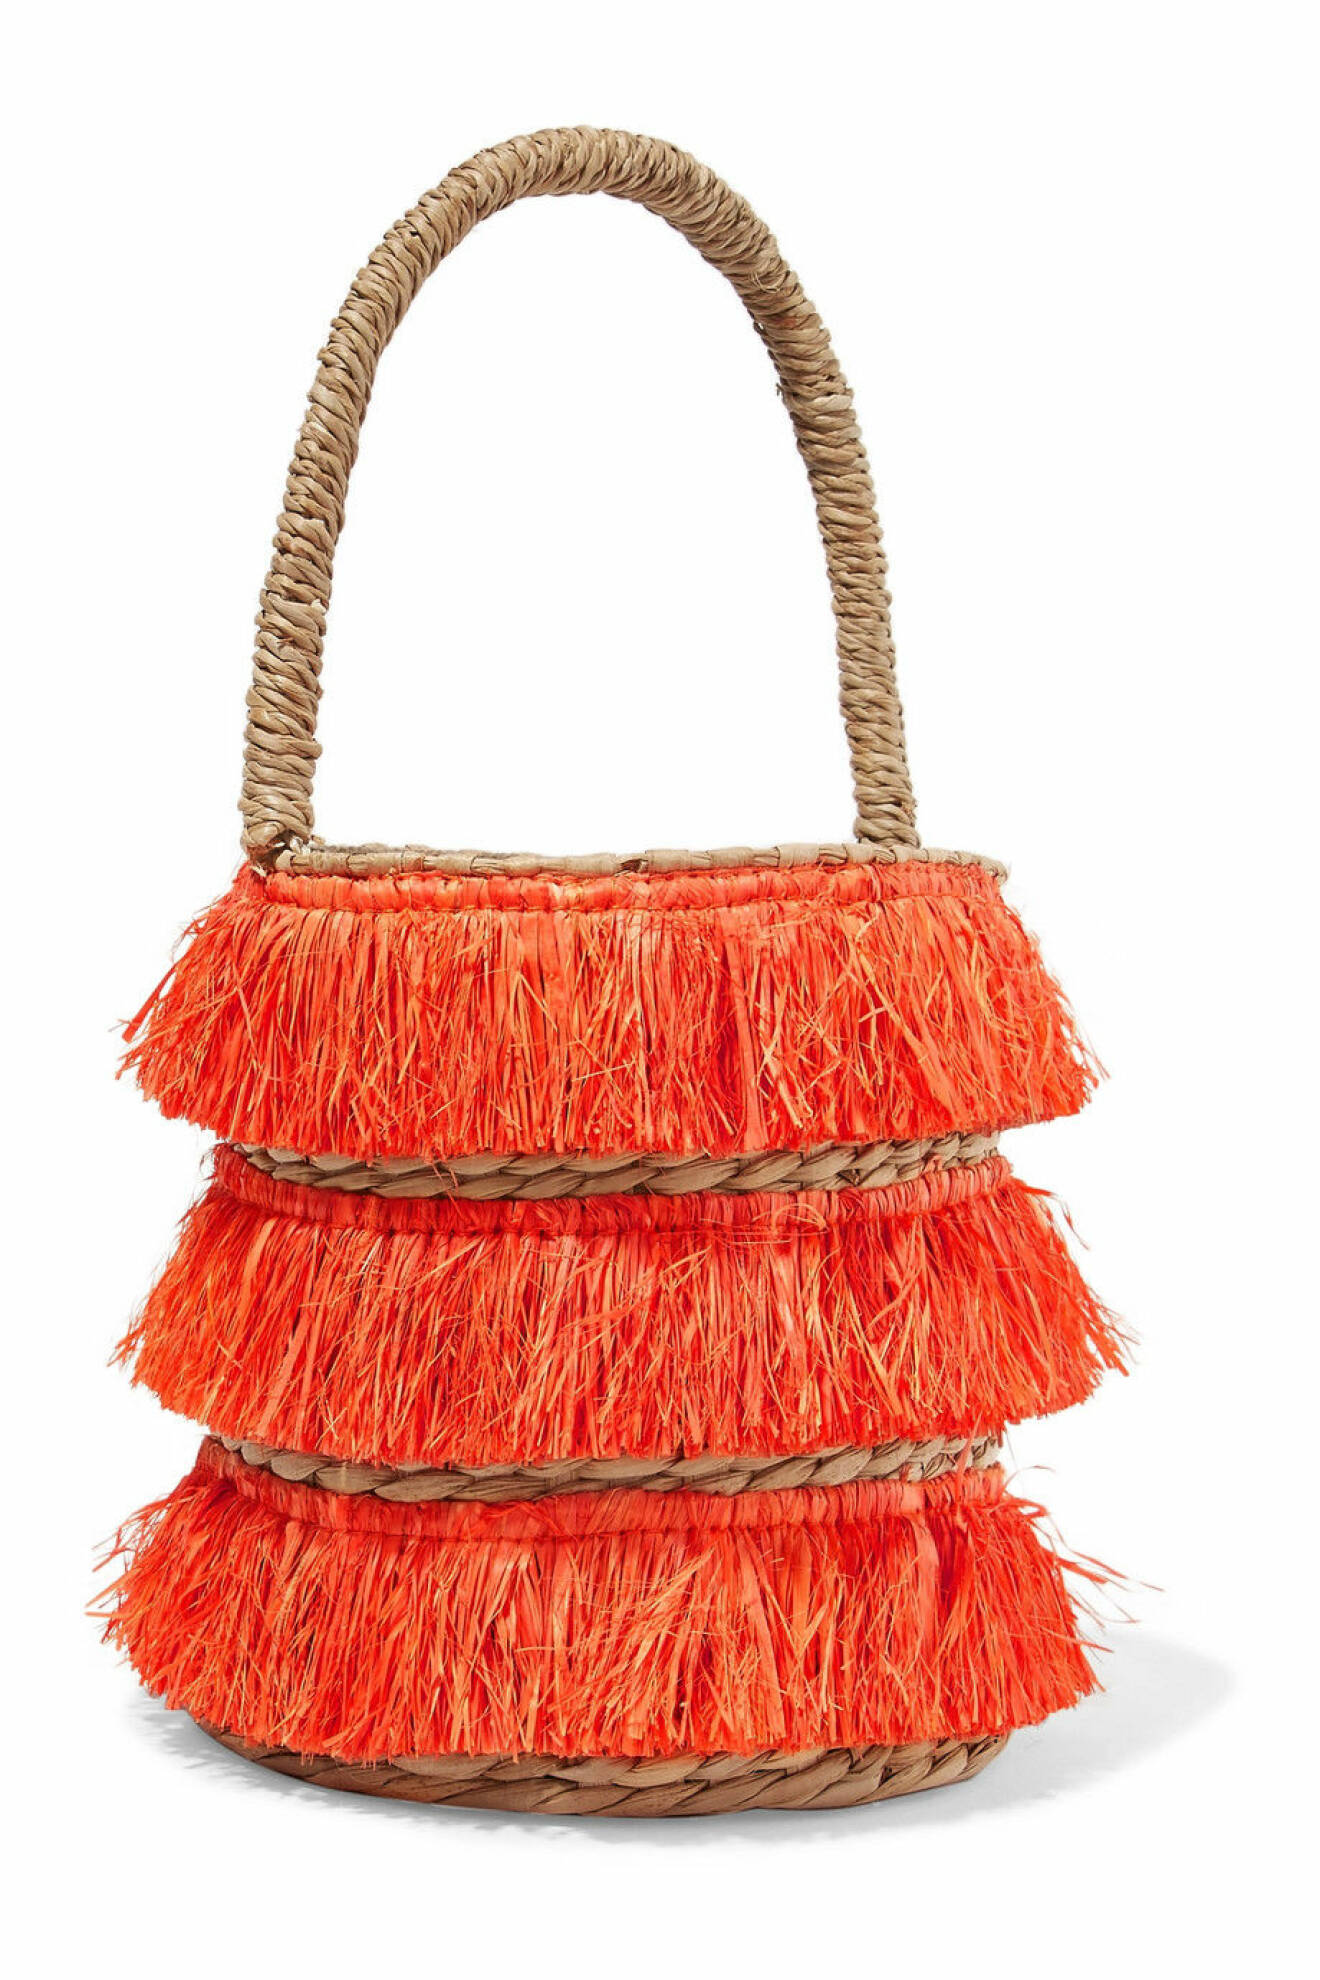 Lyxig bucket-bag med en härlig nyans av orange från Kayu.